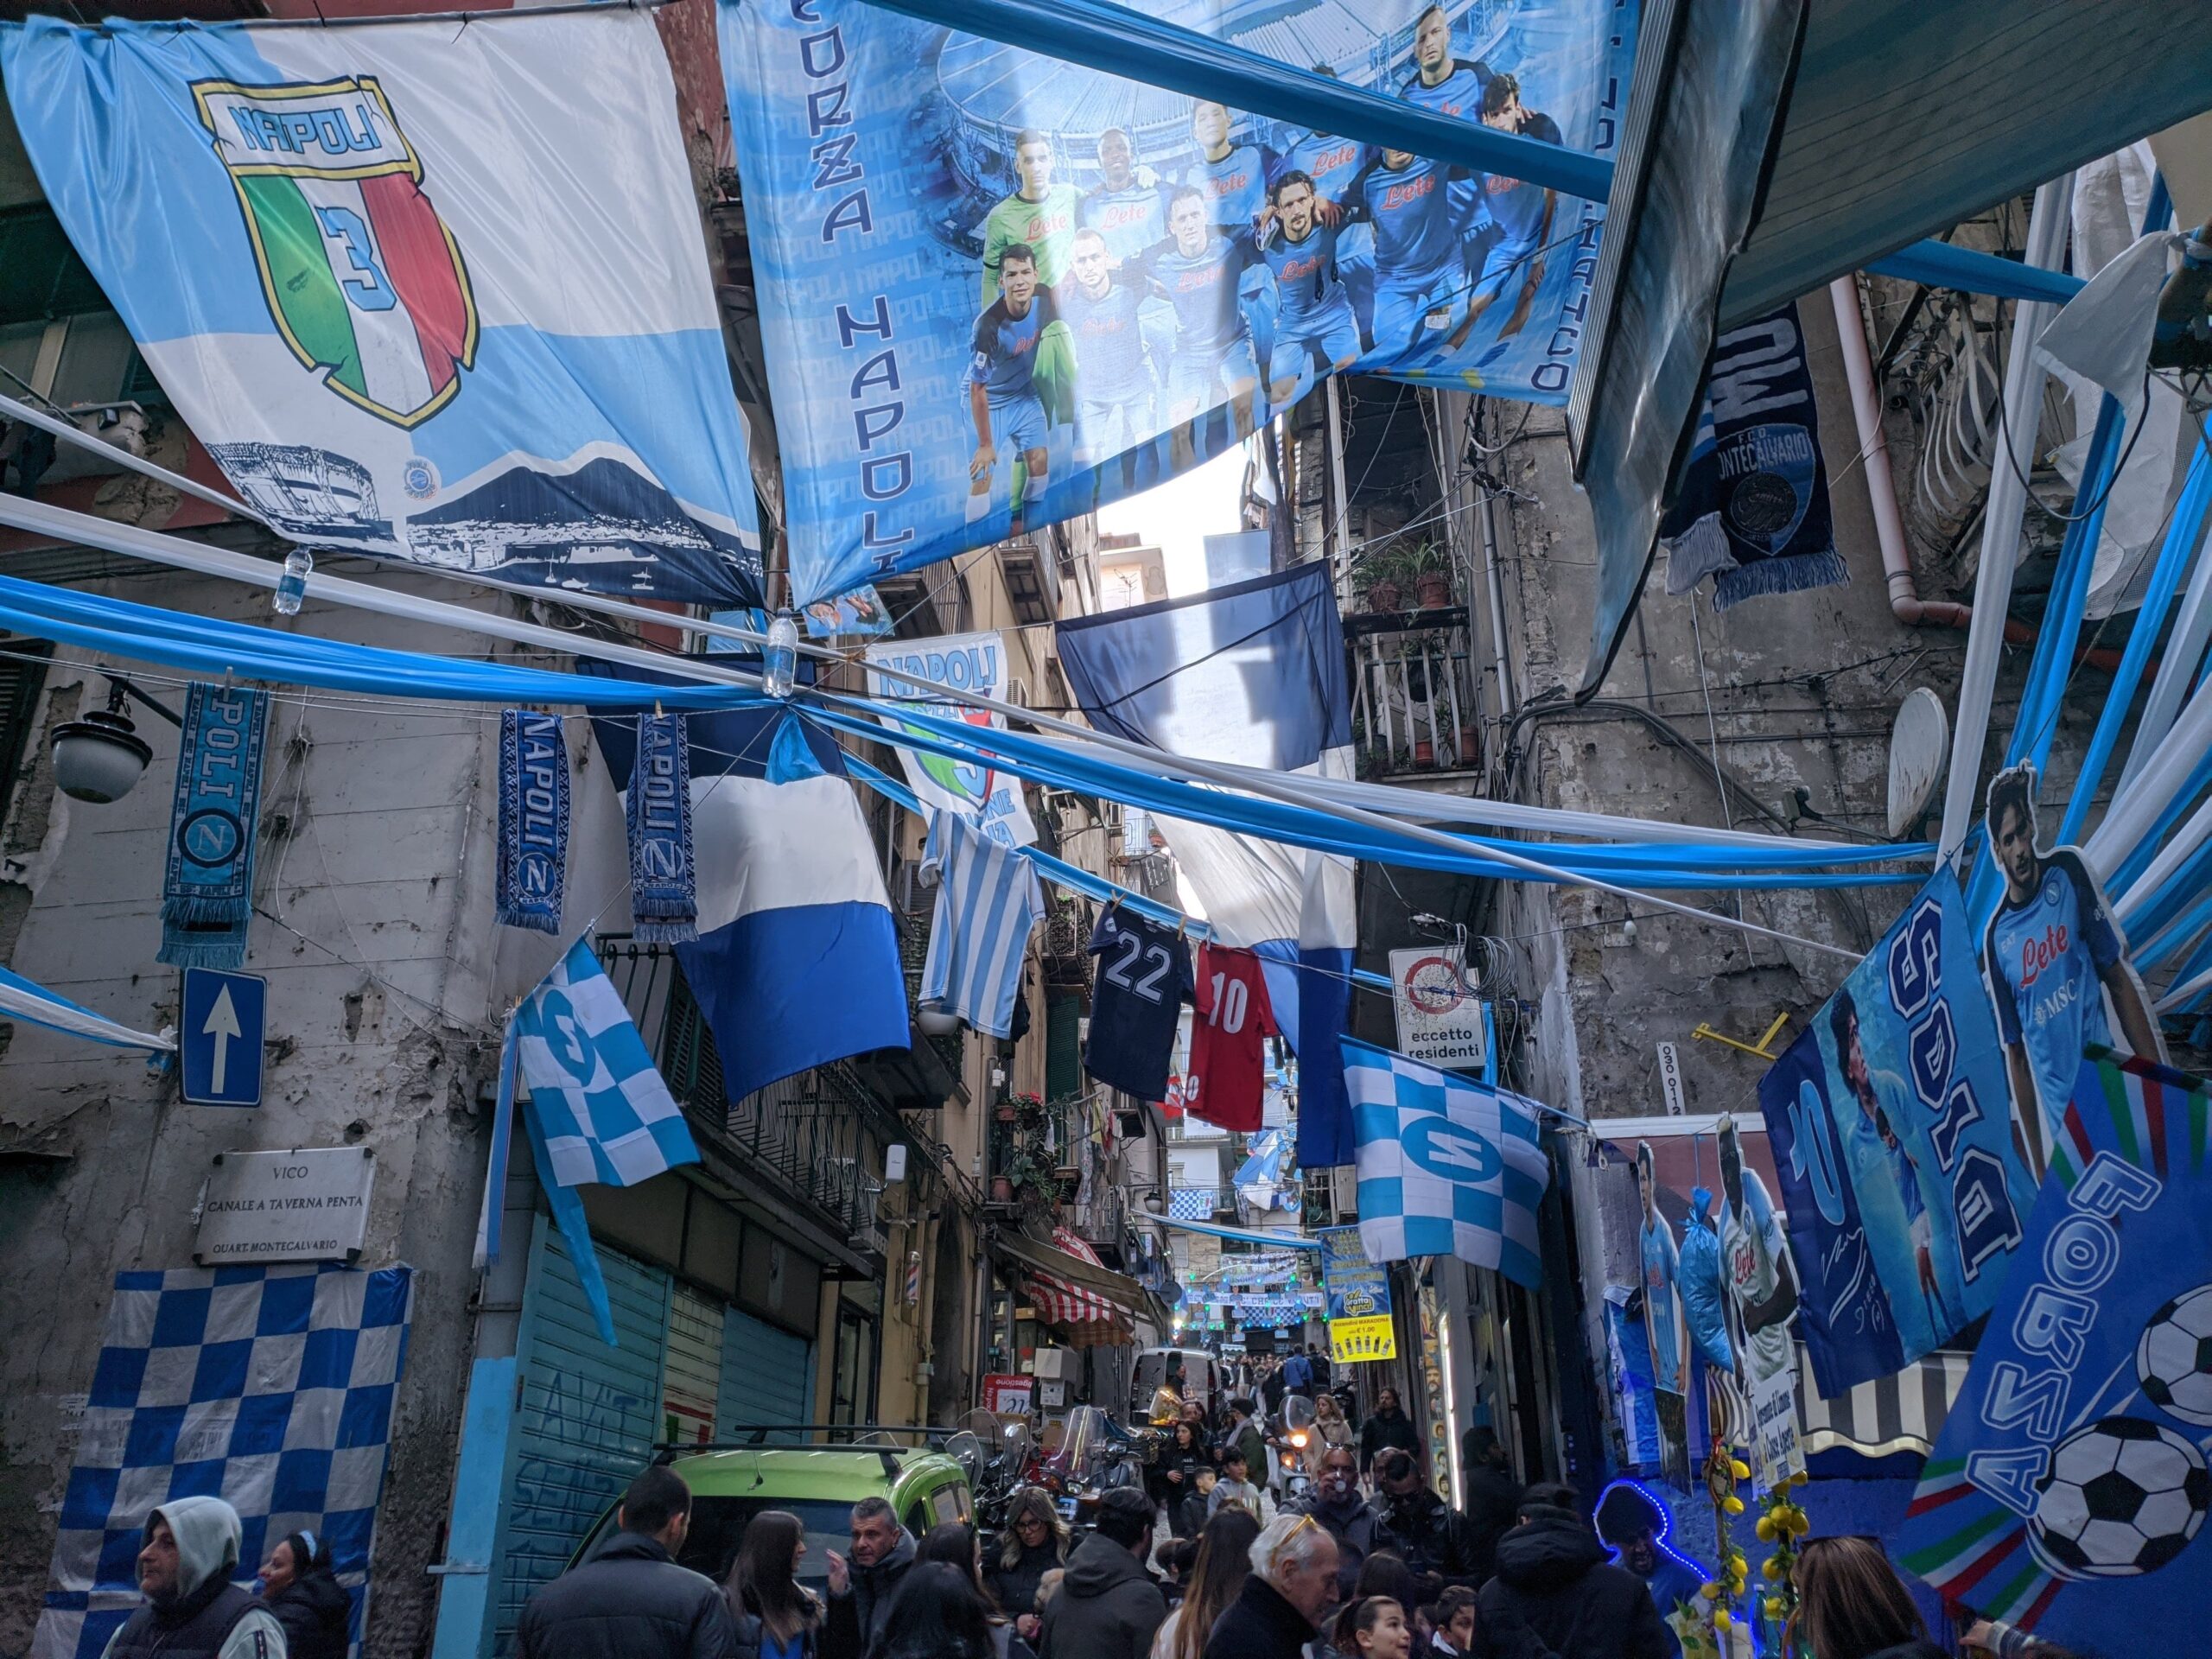 Uma rua com prédio antigos repleta de bandeiras e faixas nas cores azul e branca que cruzam de um prédio para outro.